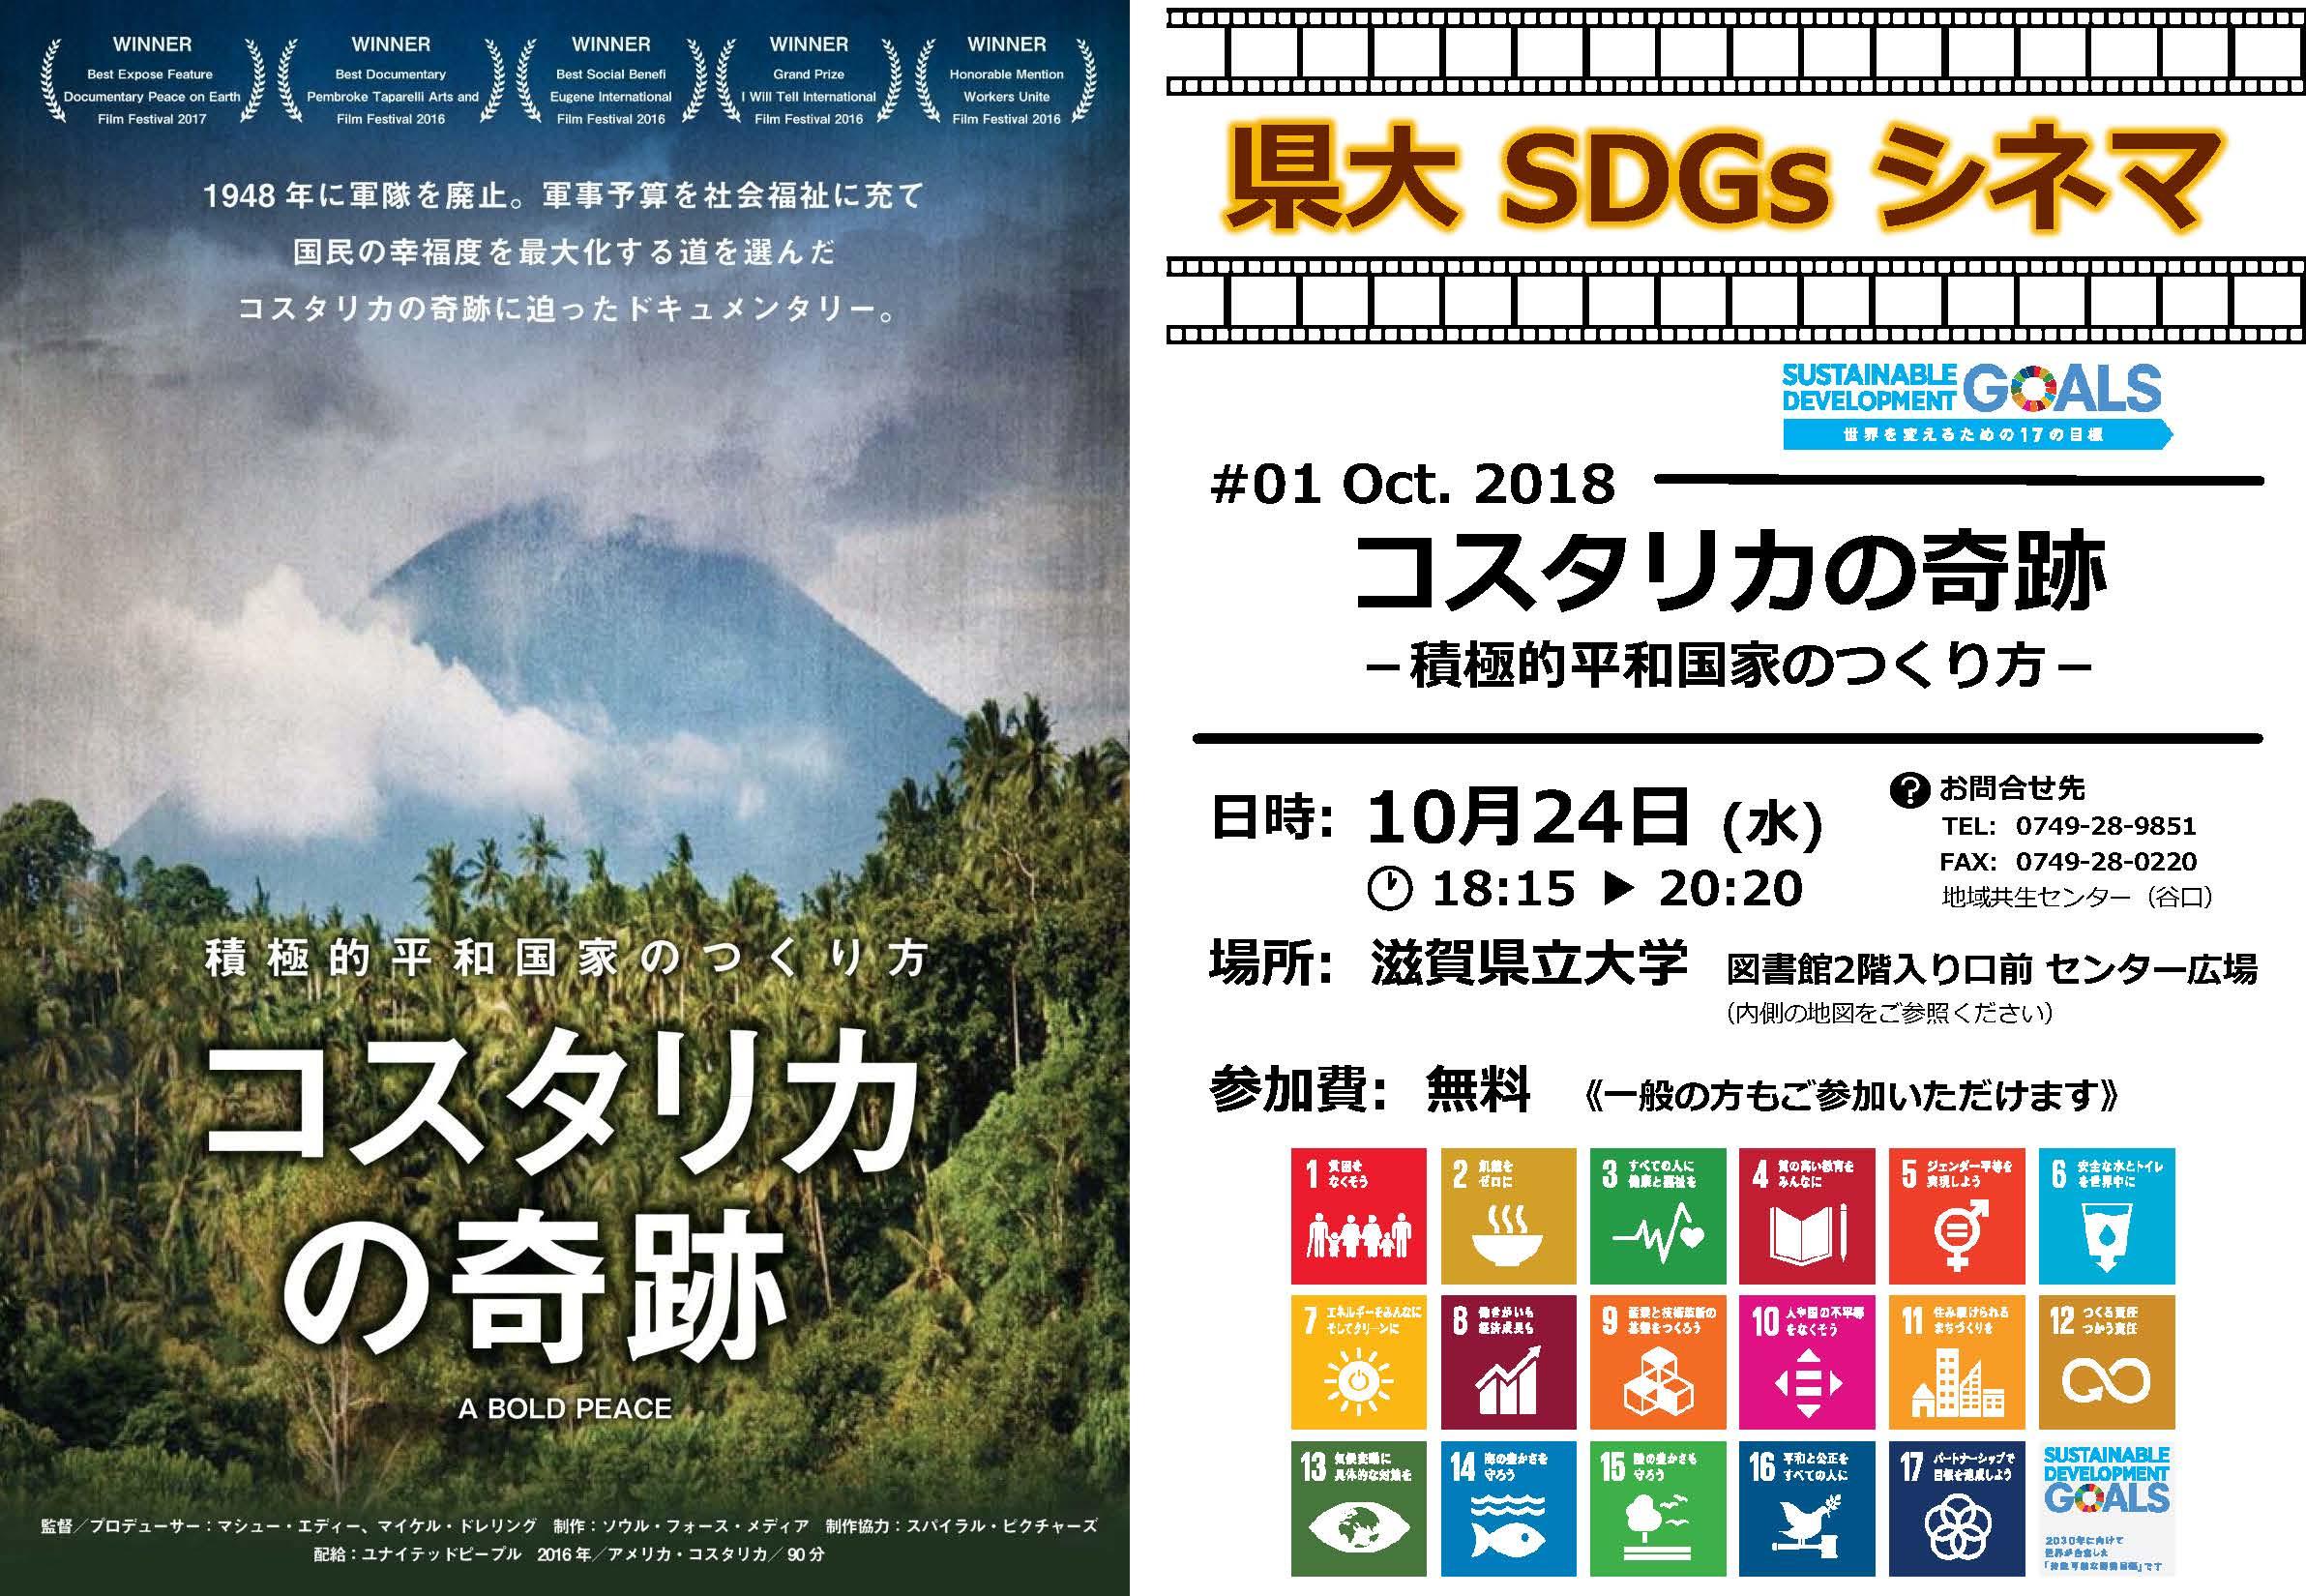 滋賀県立大学が、映画を観てSDGsを考える「県大SDGsシネマ」を開催 -- 第1回は10月24日に『コスタリカの奇跡』を上映